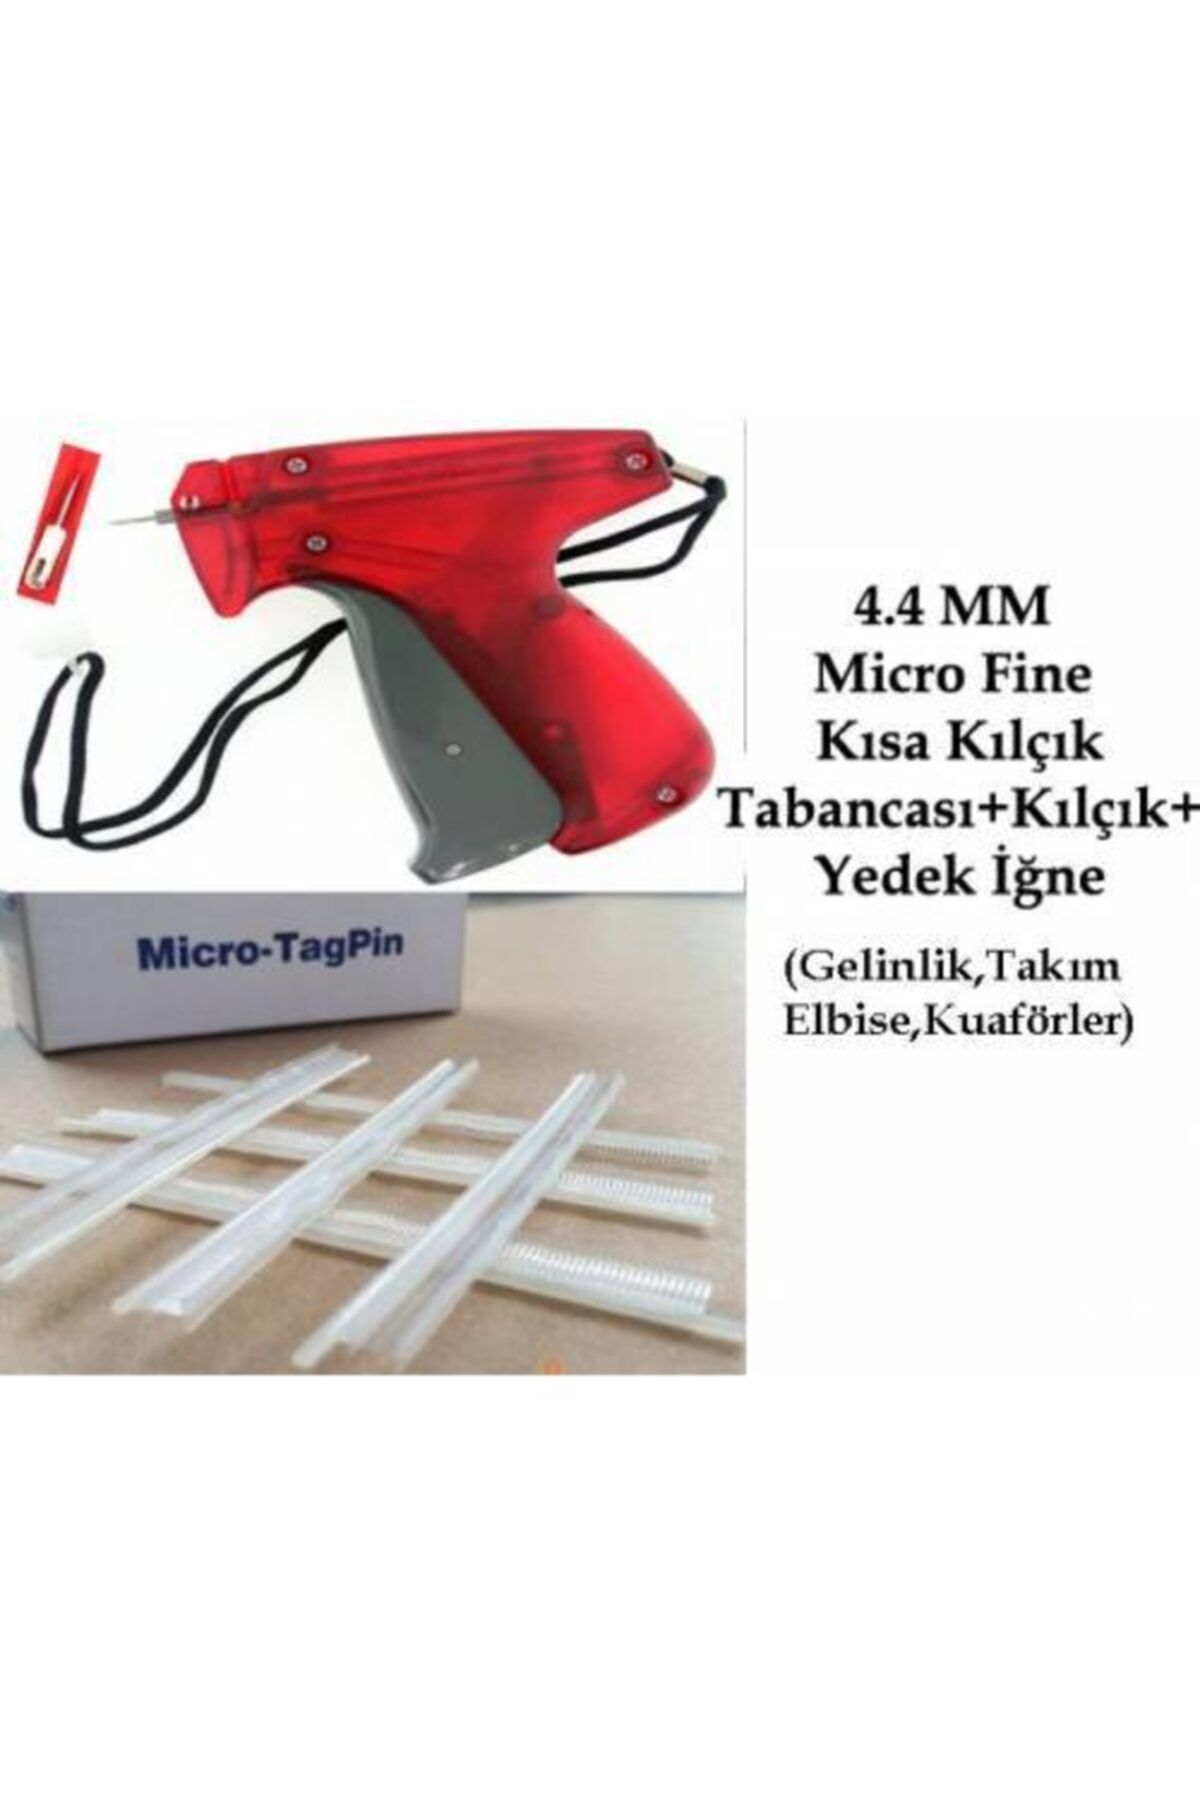 Tokıa 4.4 Mm Micro Fine Kısa Seffaf Kılçık Ve Etiket Takma Tabancası (kuaför-takım Elbise-gelinlikçiler)